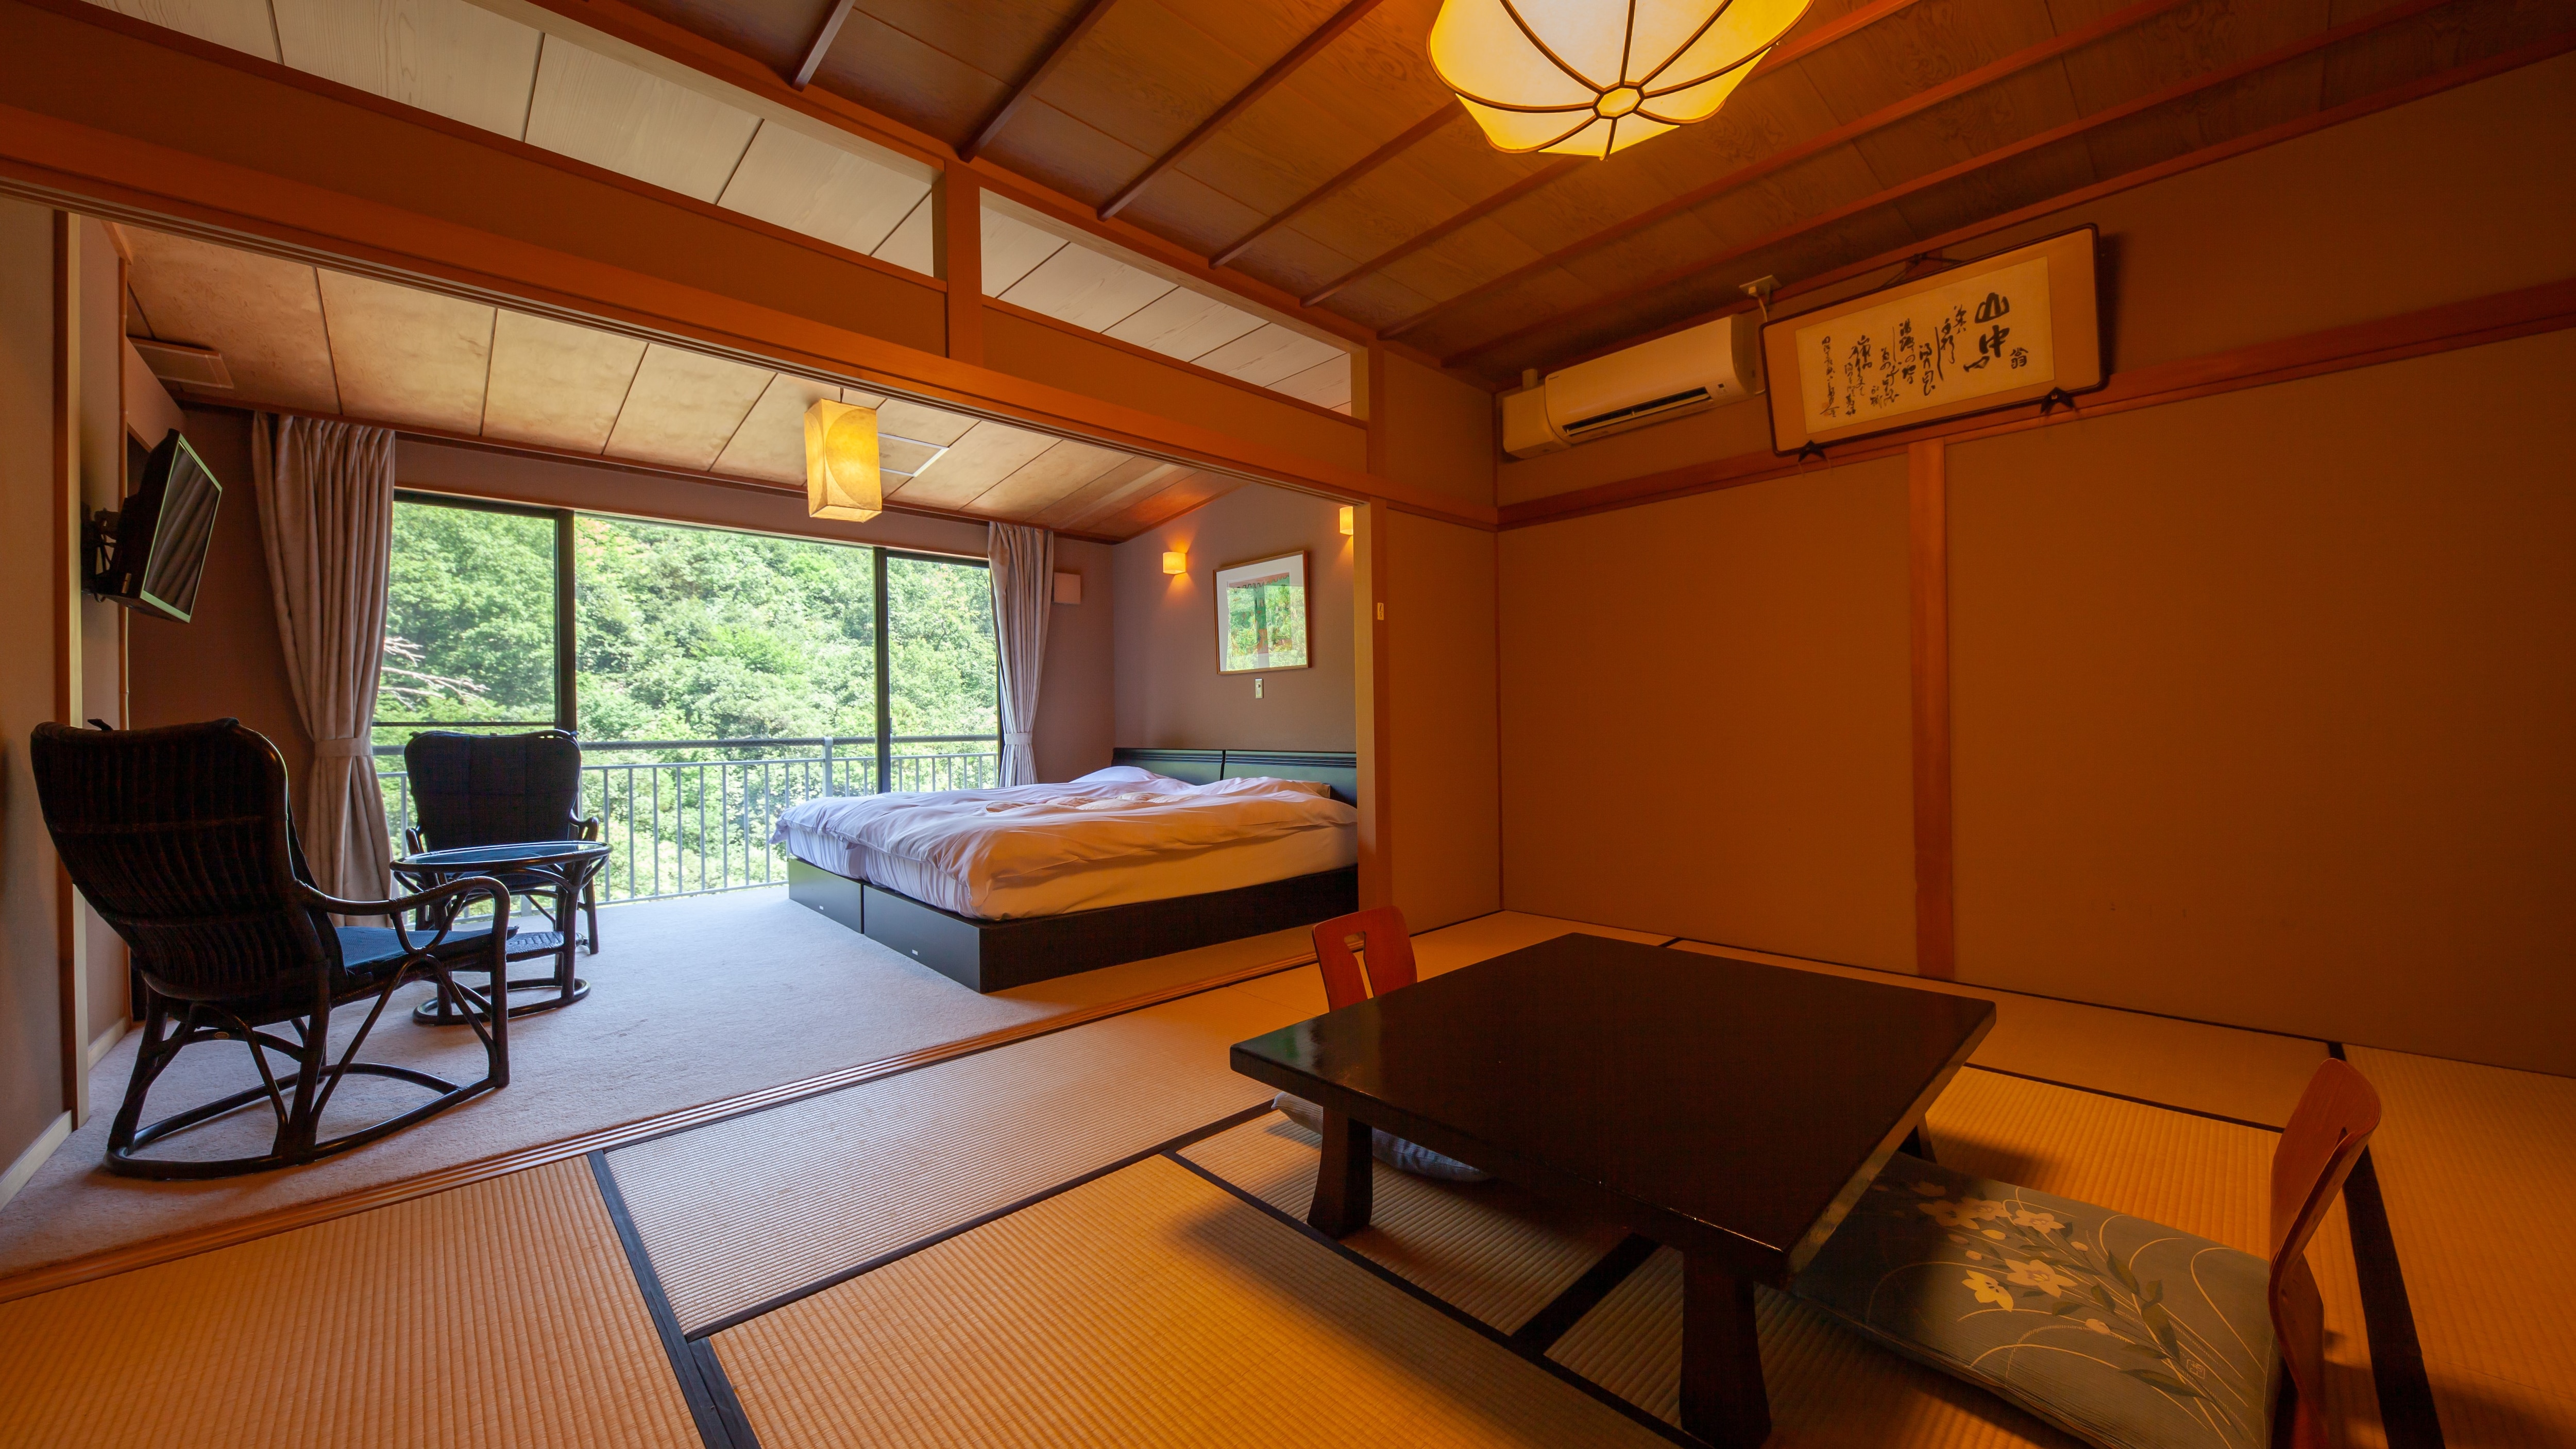 【일본식 방】 쓰루센케이를 바라보는 침대가 있는 일본식 서양실